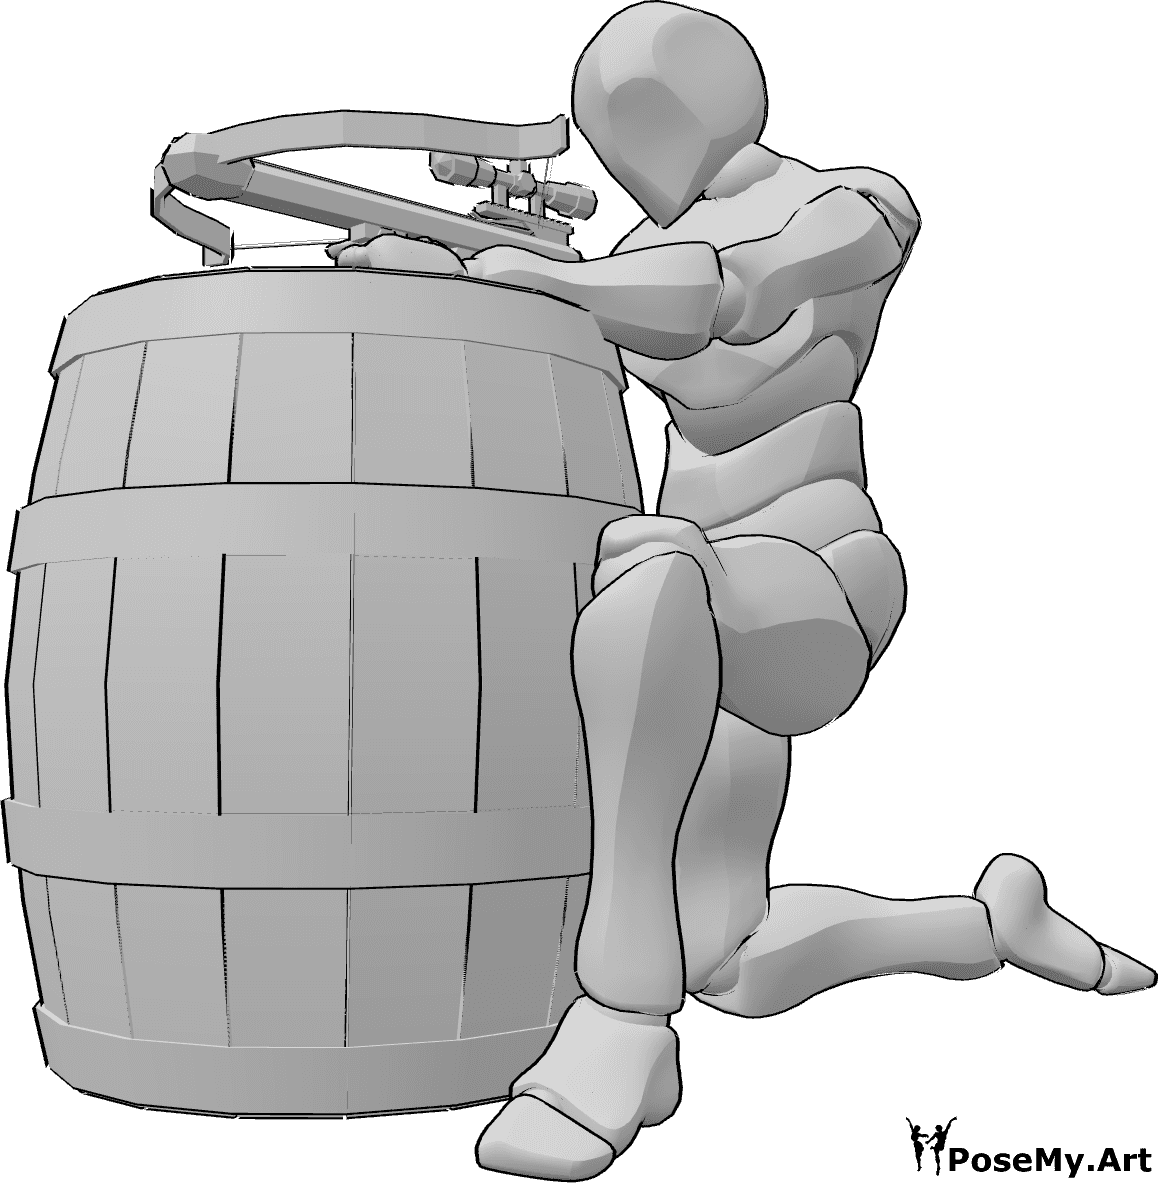 Riferimento alle pose- Posa di puntamento della canna della balestra - Uomo inginocchiato e intento a puntare la balestra mentre si appoggia a una botte